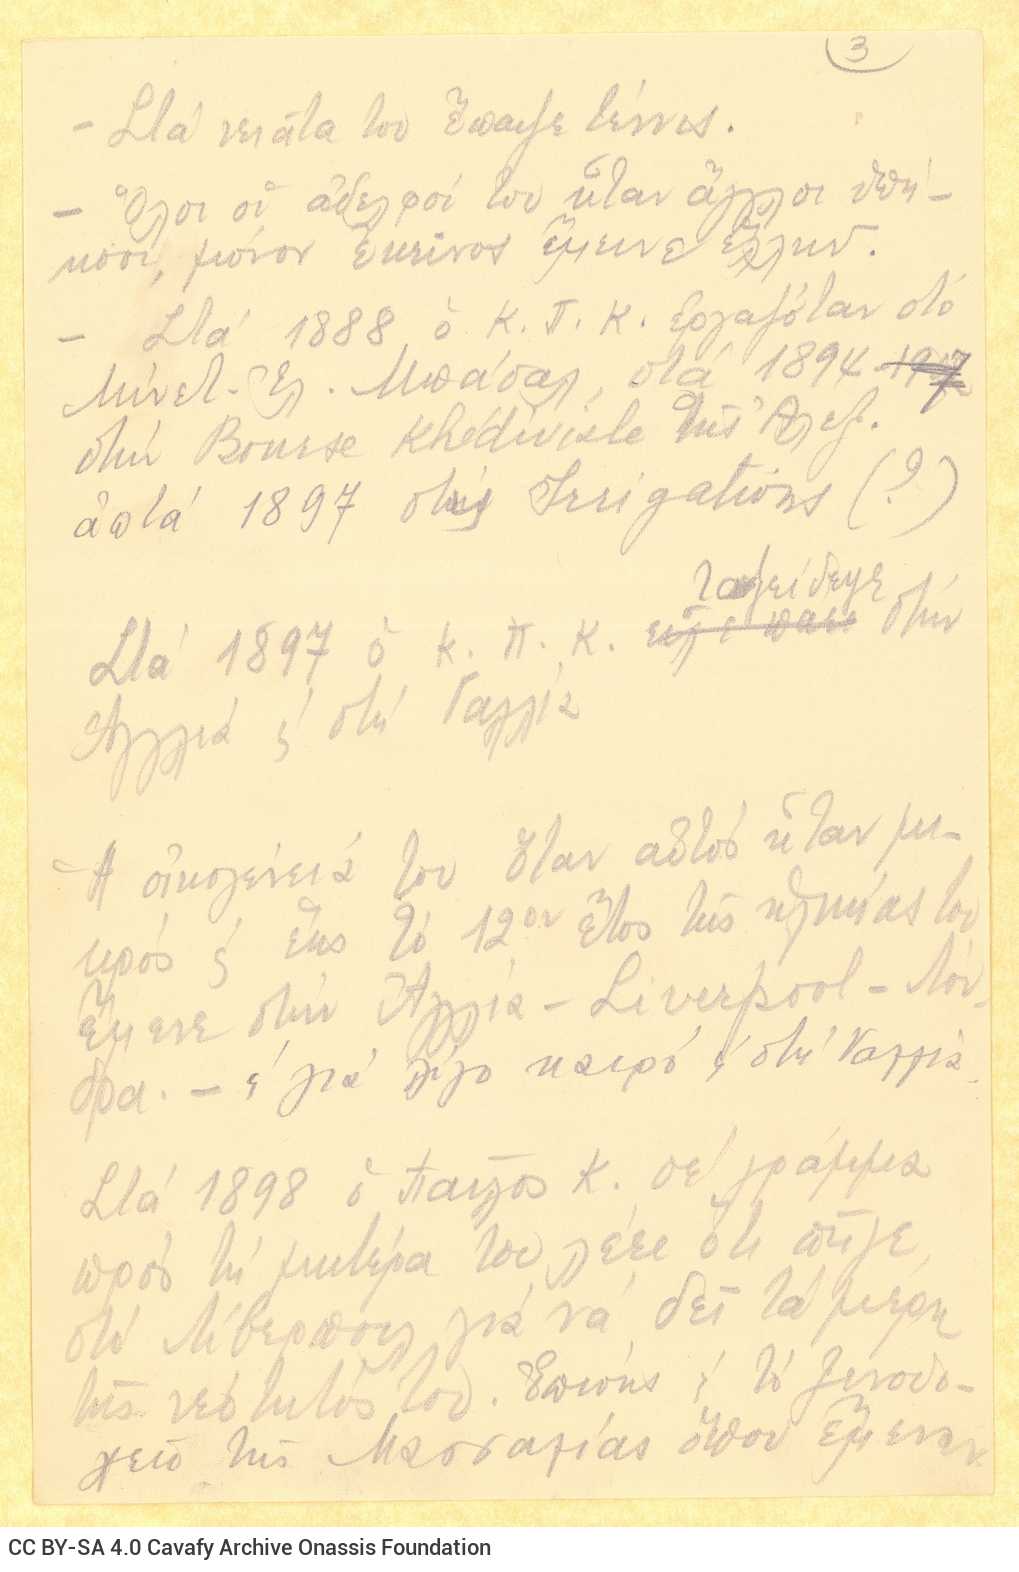 Χειρόγραφες σημειώσεις της Ρίκας Σεγκοπούλου στο recto οκτώ φύλλων. Το